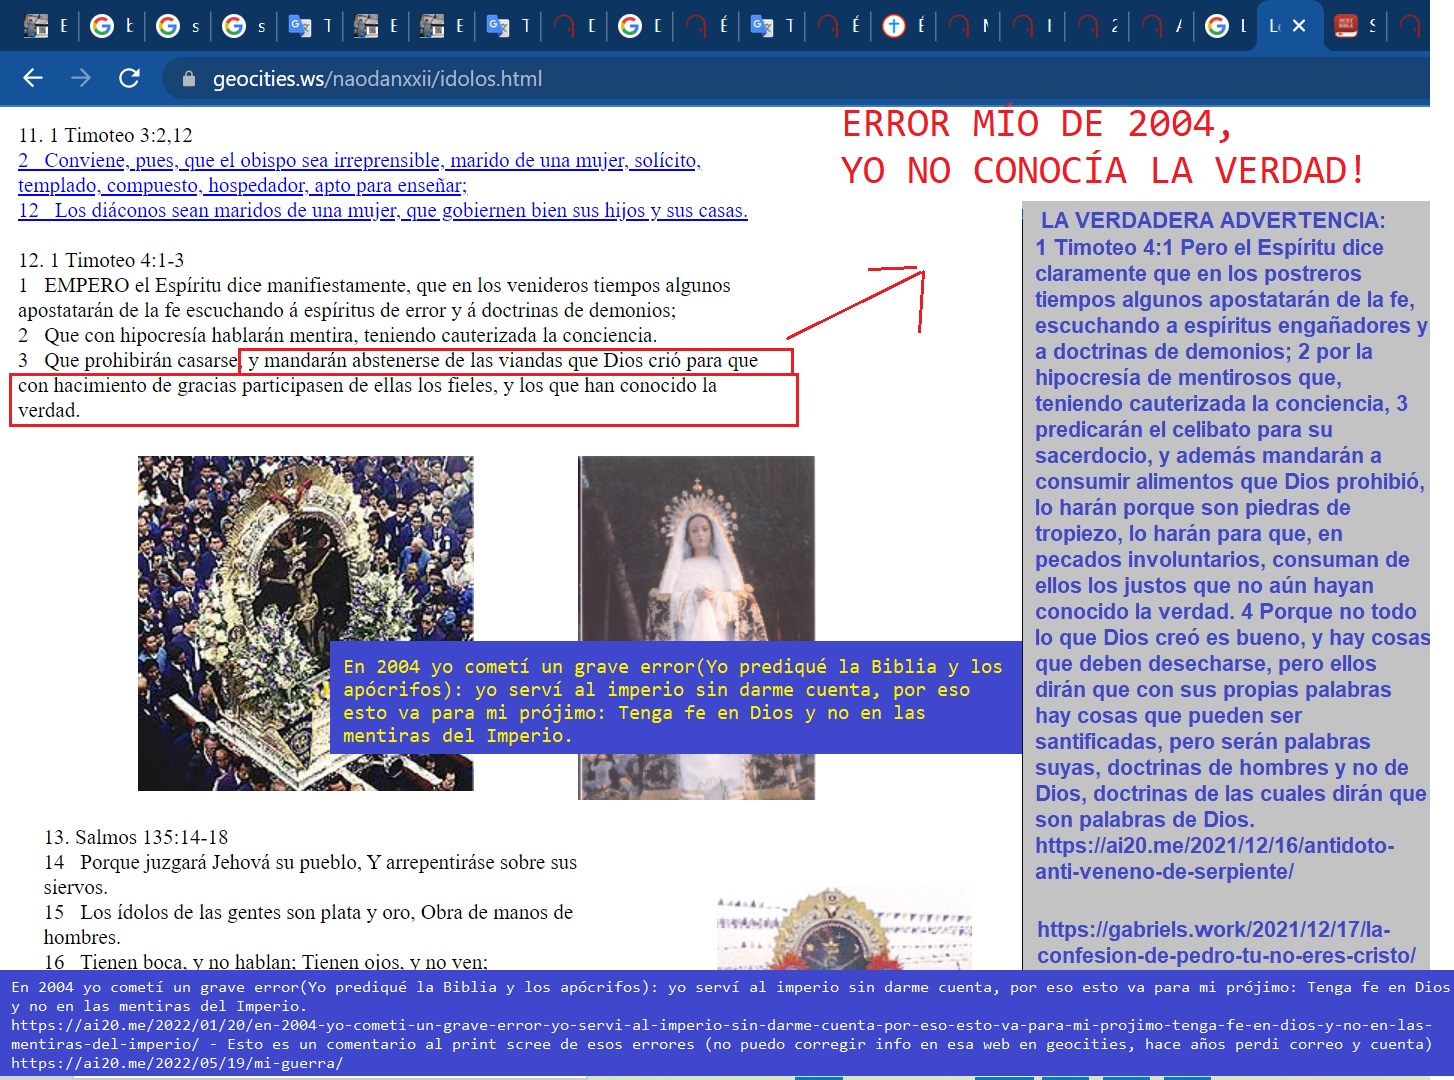 ejemplo de errores antiguos de Jose Galindo en naodanxxii 2004 -2